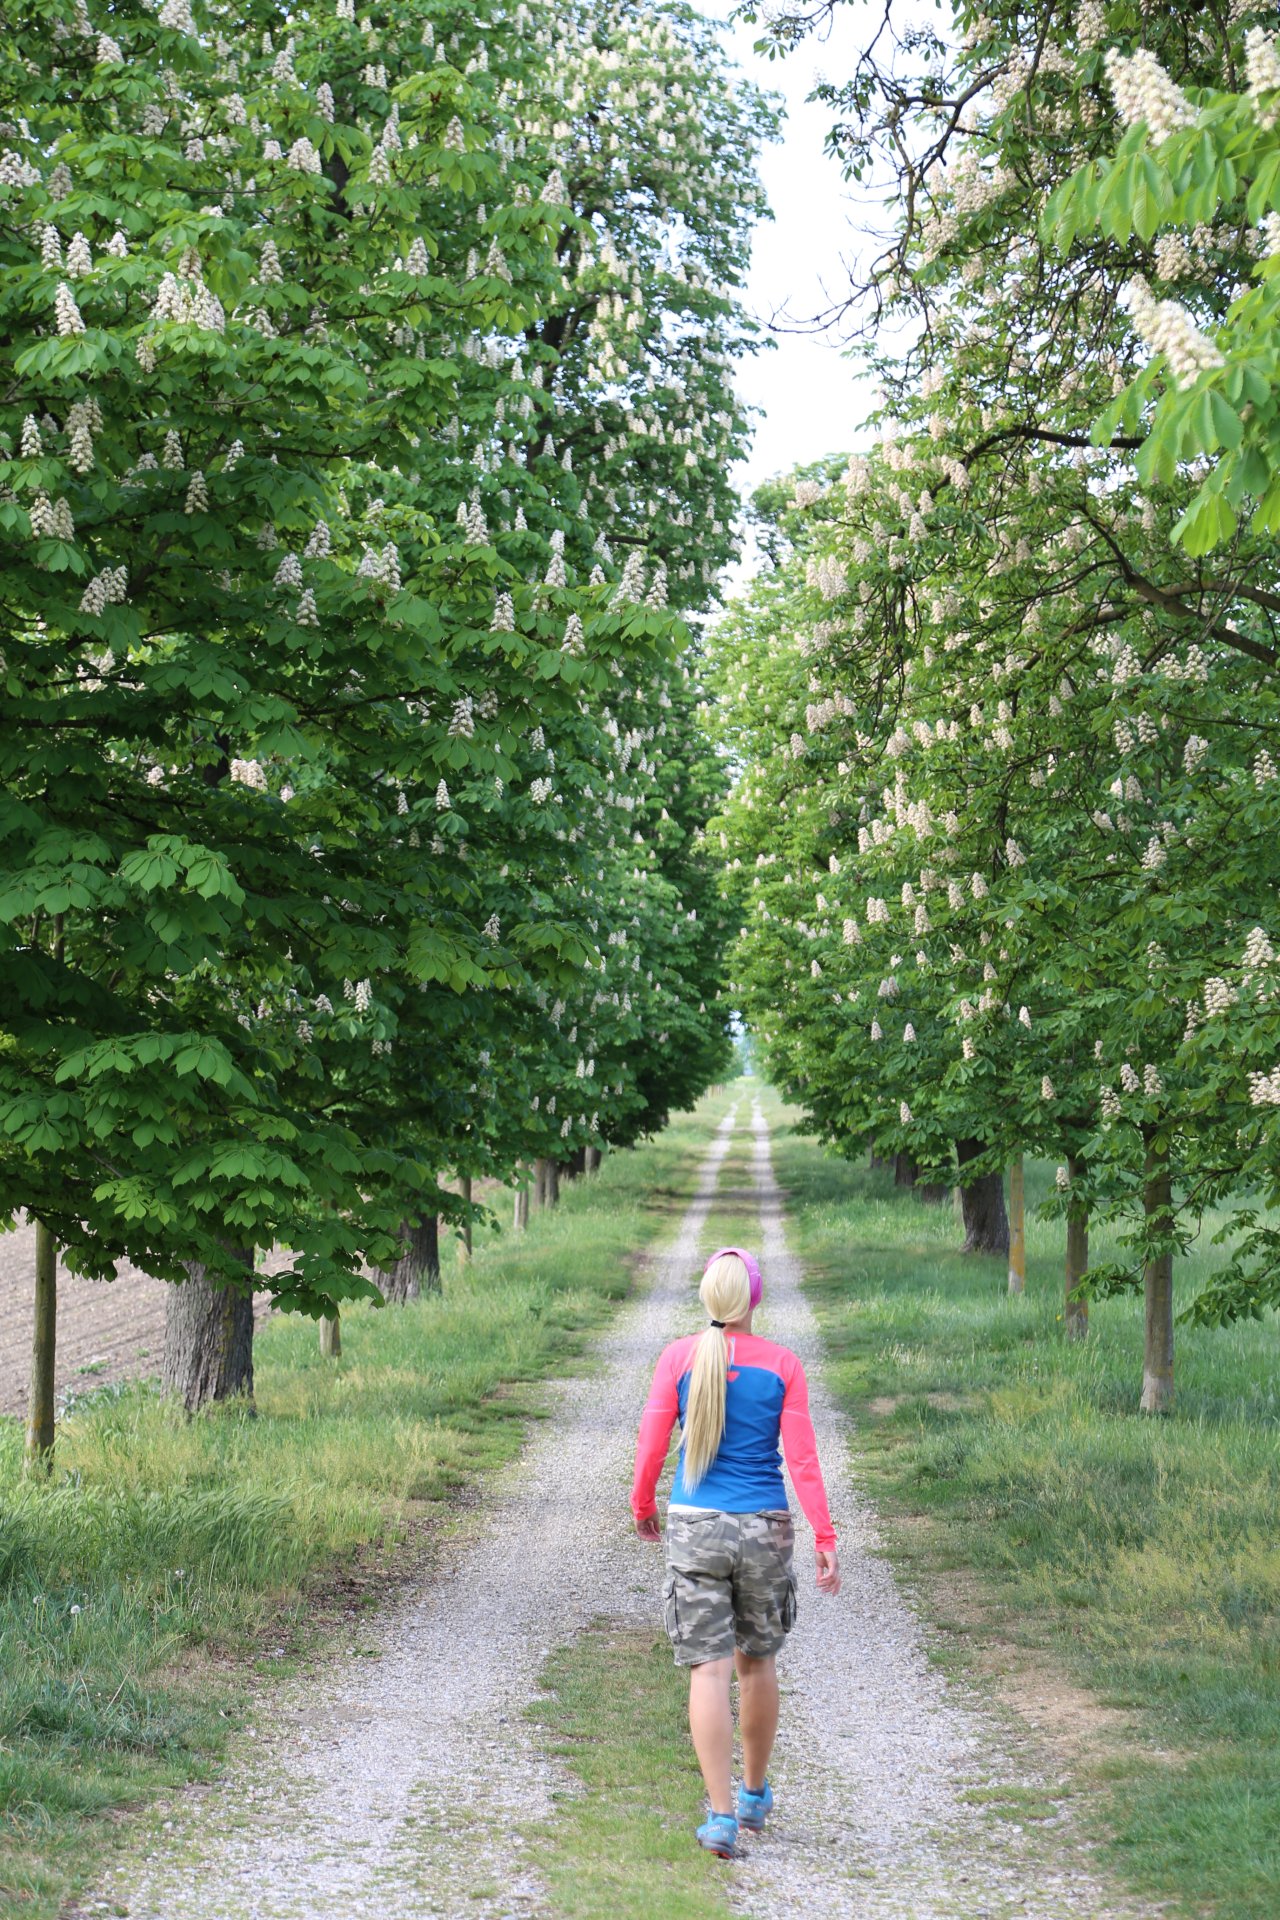 Schritt für Schritt zum Ziel .. - Allee, Baumallee, Bäume, Natur, Spazierweg, Weg - WEISSINGER Sofia - (Stetteldorf am Wagram, Niederösterreich, Österreich)